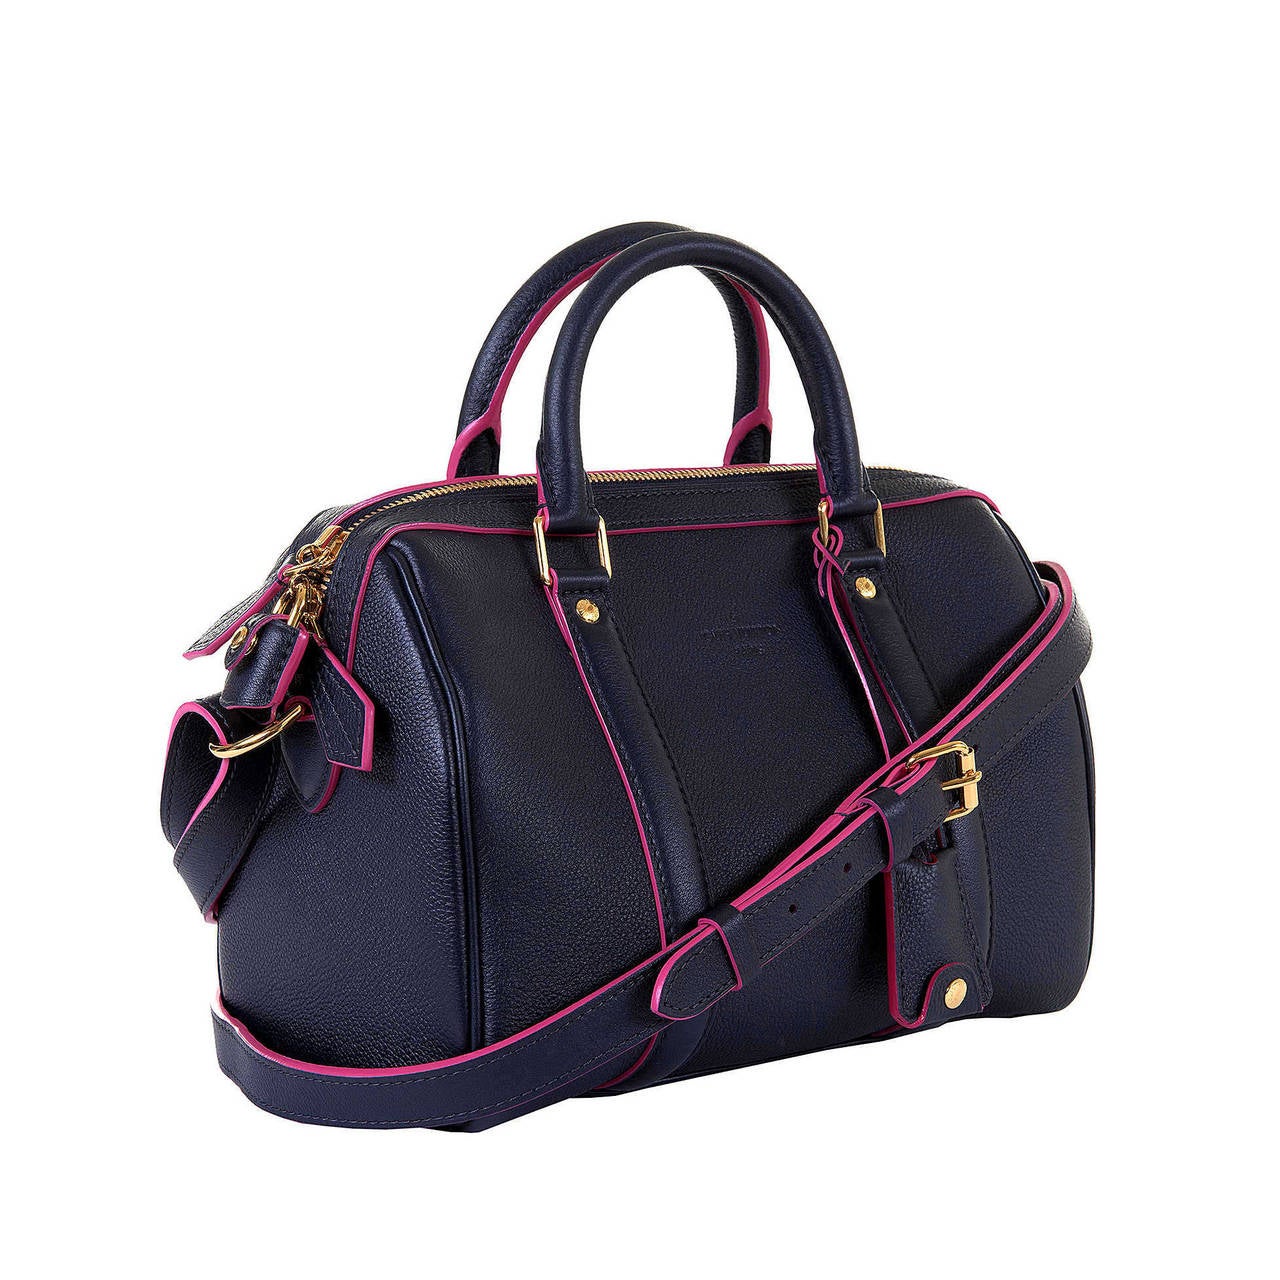 'New & Unused' Limited Edition Louis Vuitton Sofia Coppola 'Veau-Cachmire'  Bag